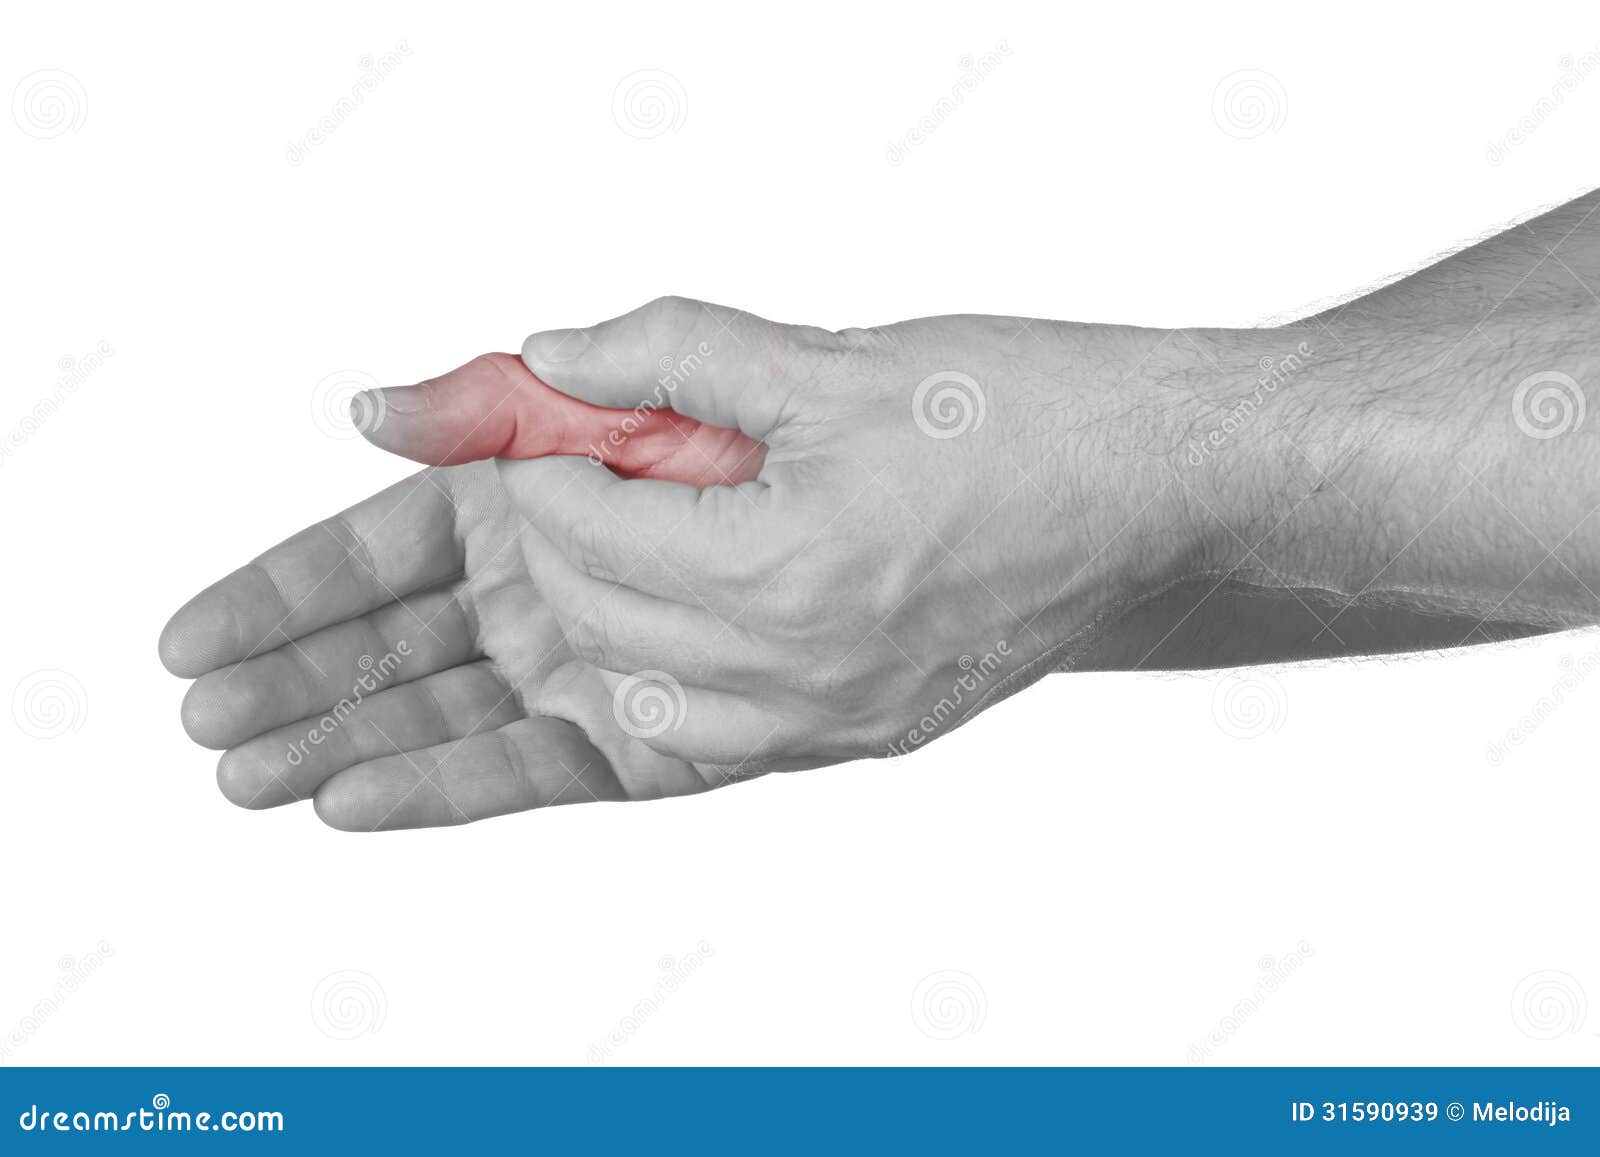 Сильно болят пальцы рук что делать. Сустав большого пальца руки. Боль в суставе большого пальца руки. Болит сустав большого пальца на руке. Болит сустав Болшево пальца на руке.